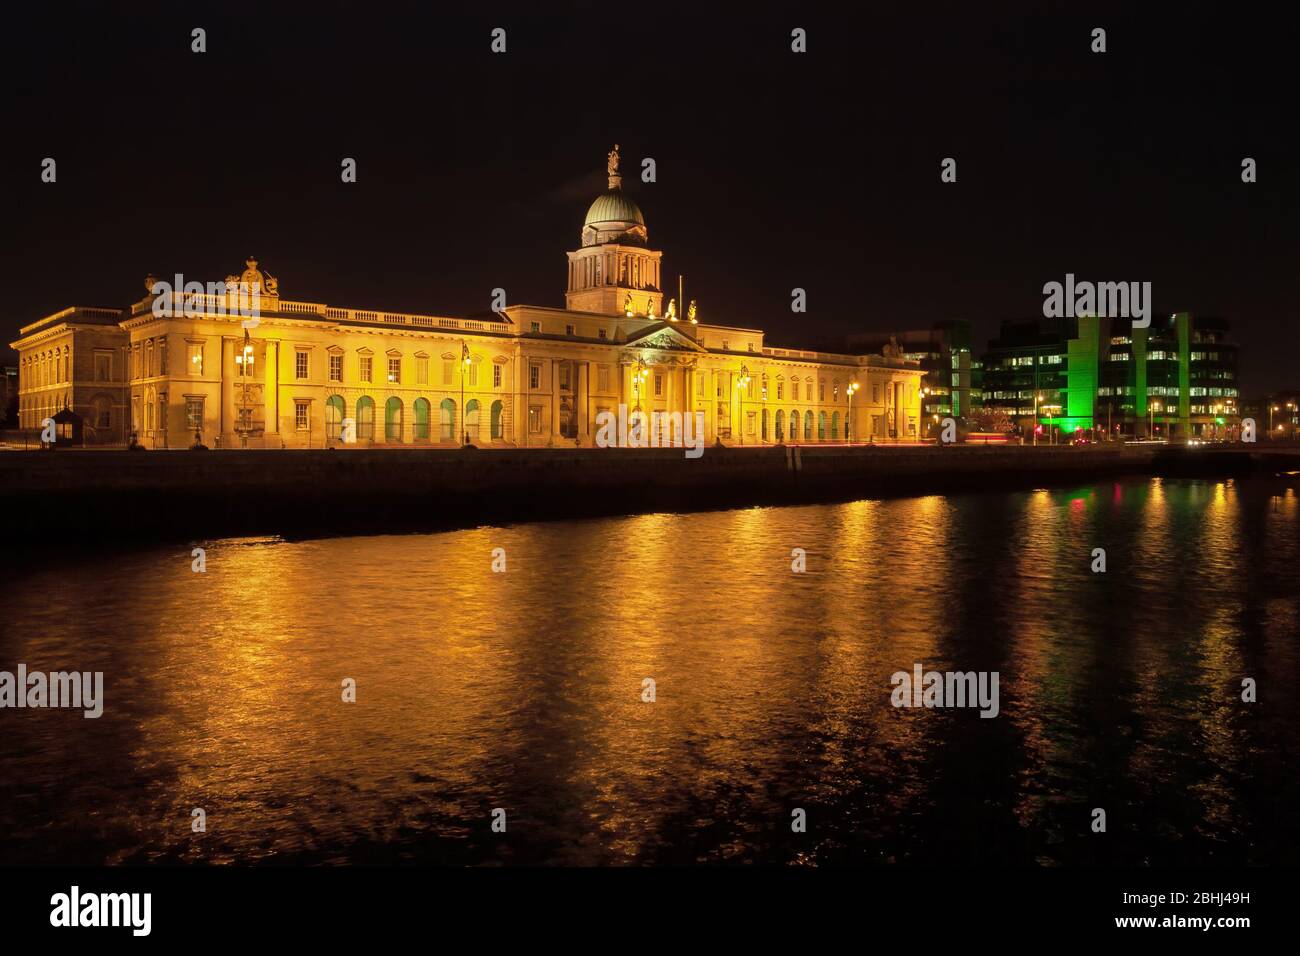 Das Custom House bei Nacht in der Stadt Dublin in Irland, Wahrzeichen der Stadt am Liffey Fluss, beleuchtete neoklassizistische Fassade aus dem 18. Jahrhundert. Stockfoto